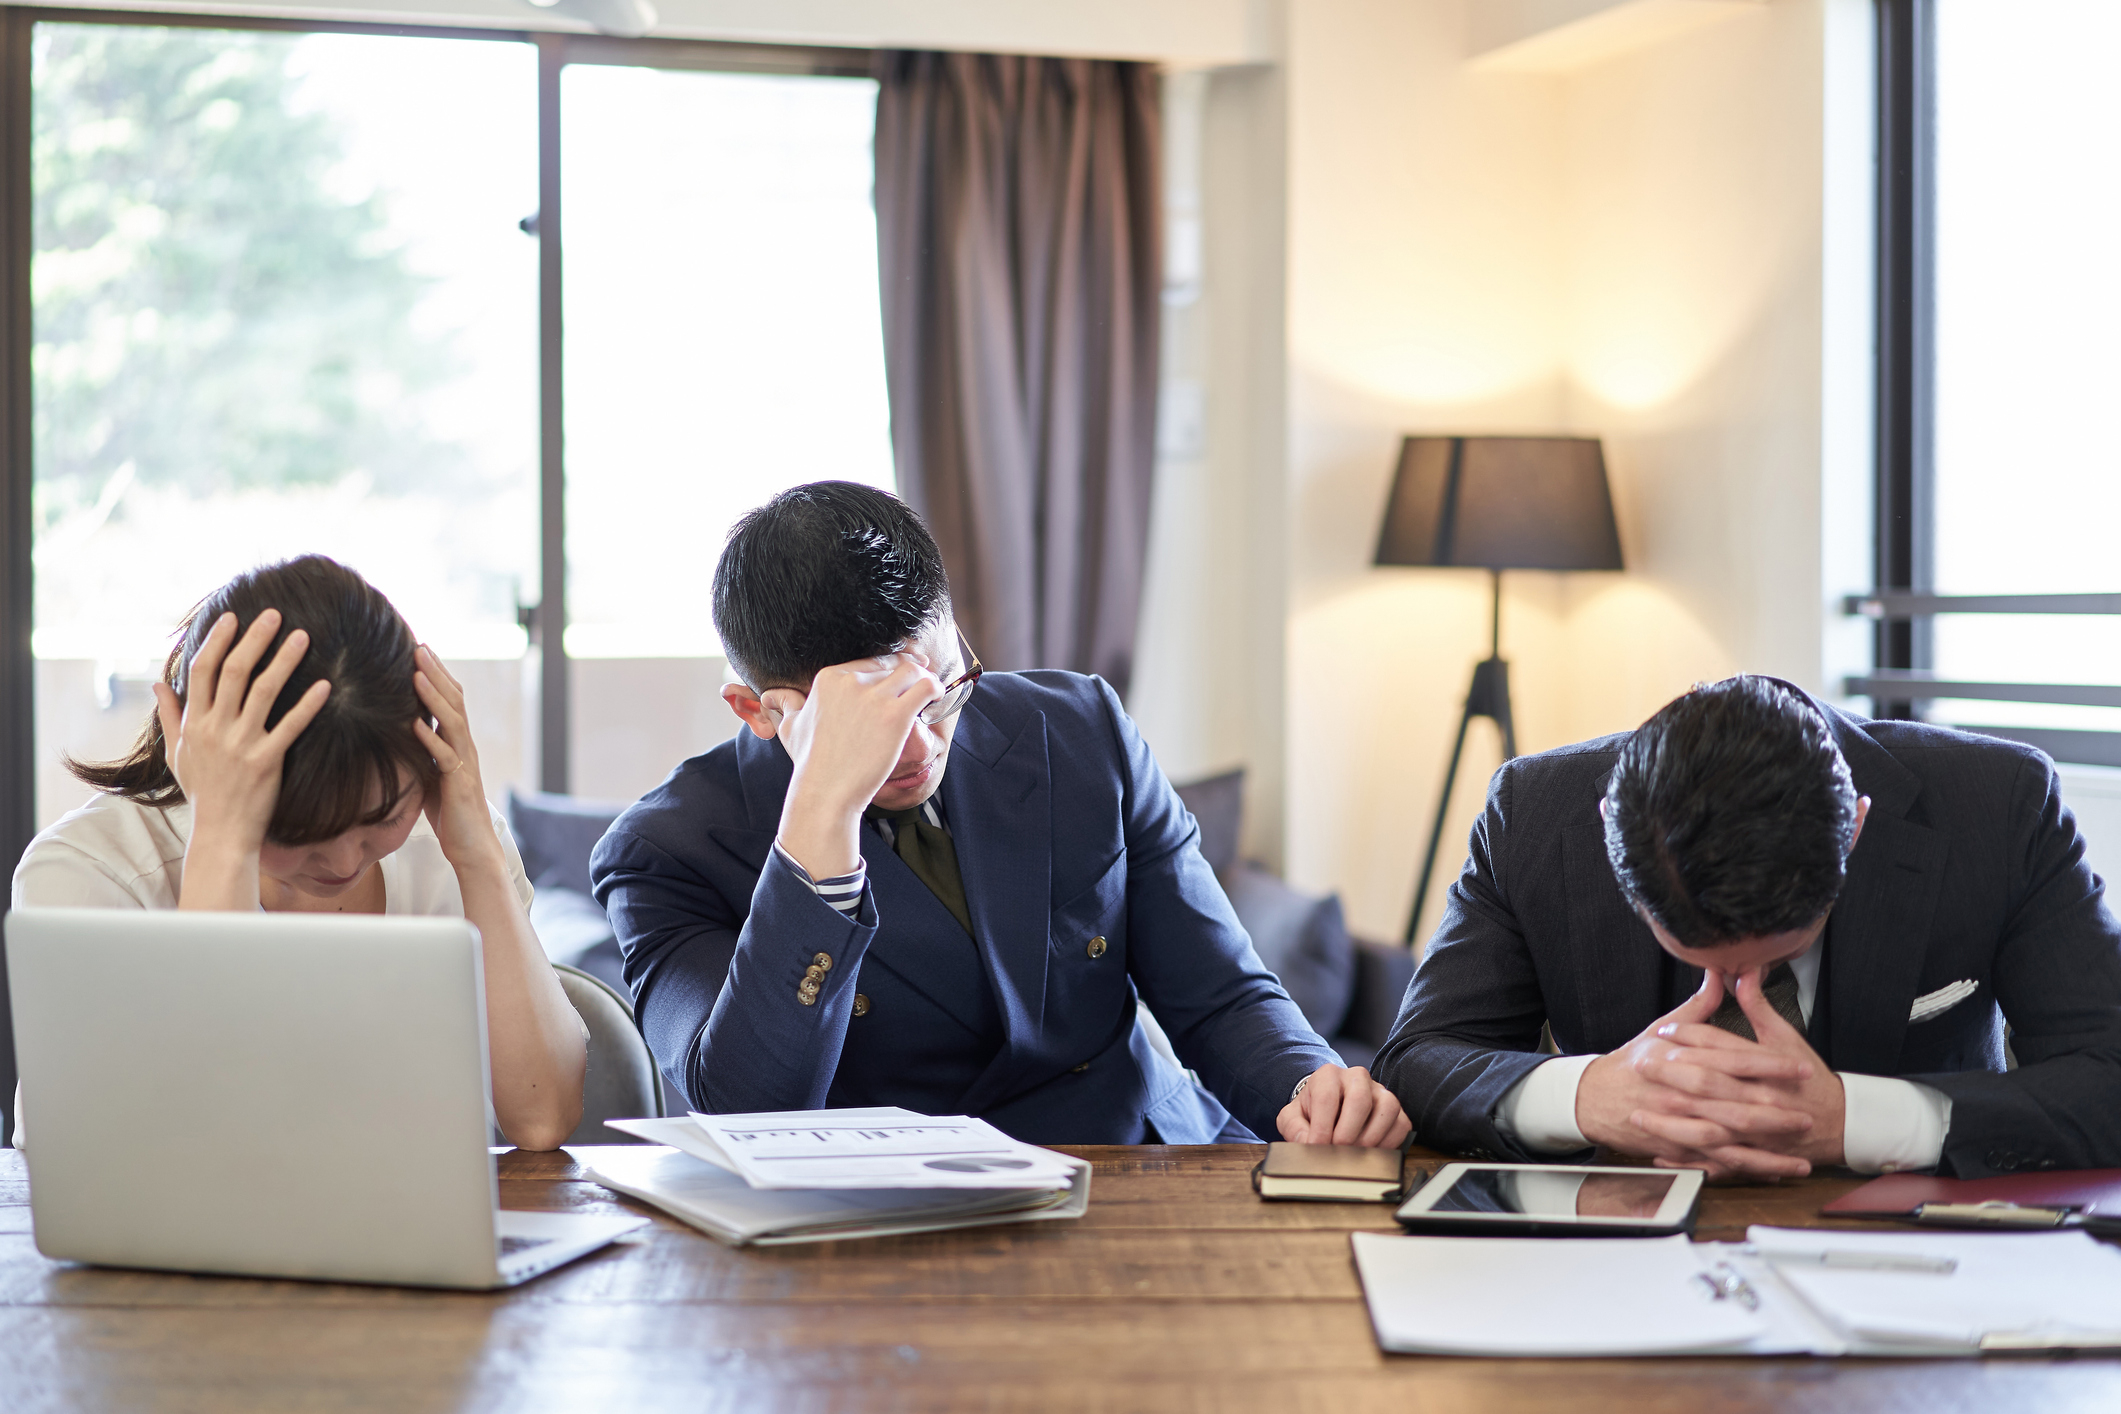 デスクで頭を抱える３人のビジネスパーソンがストレスを感じている様子。